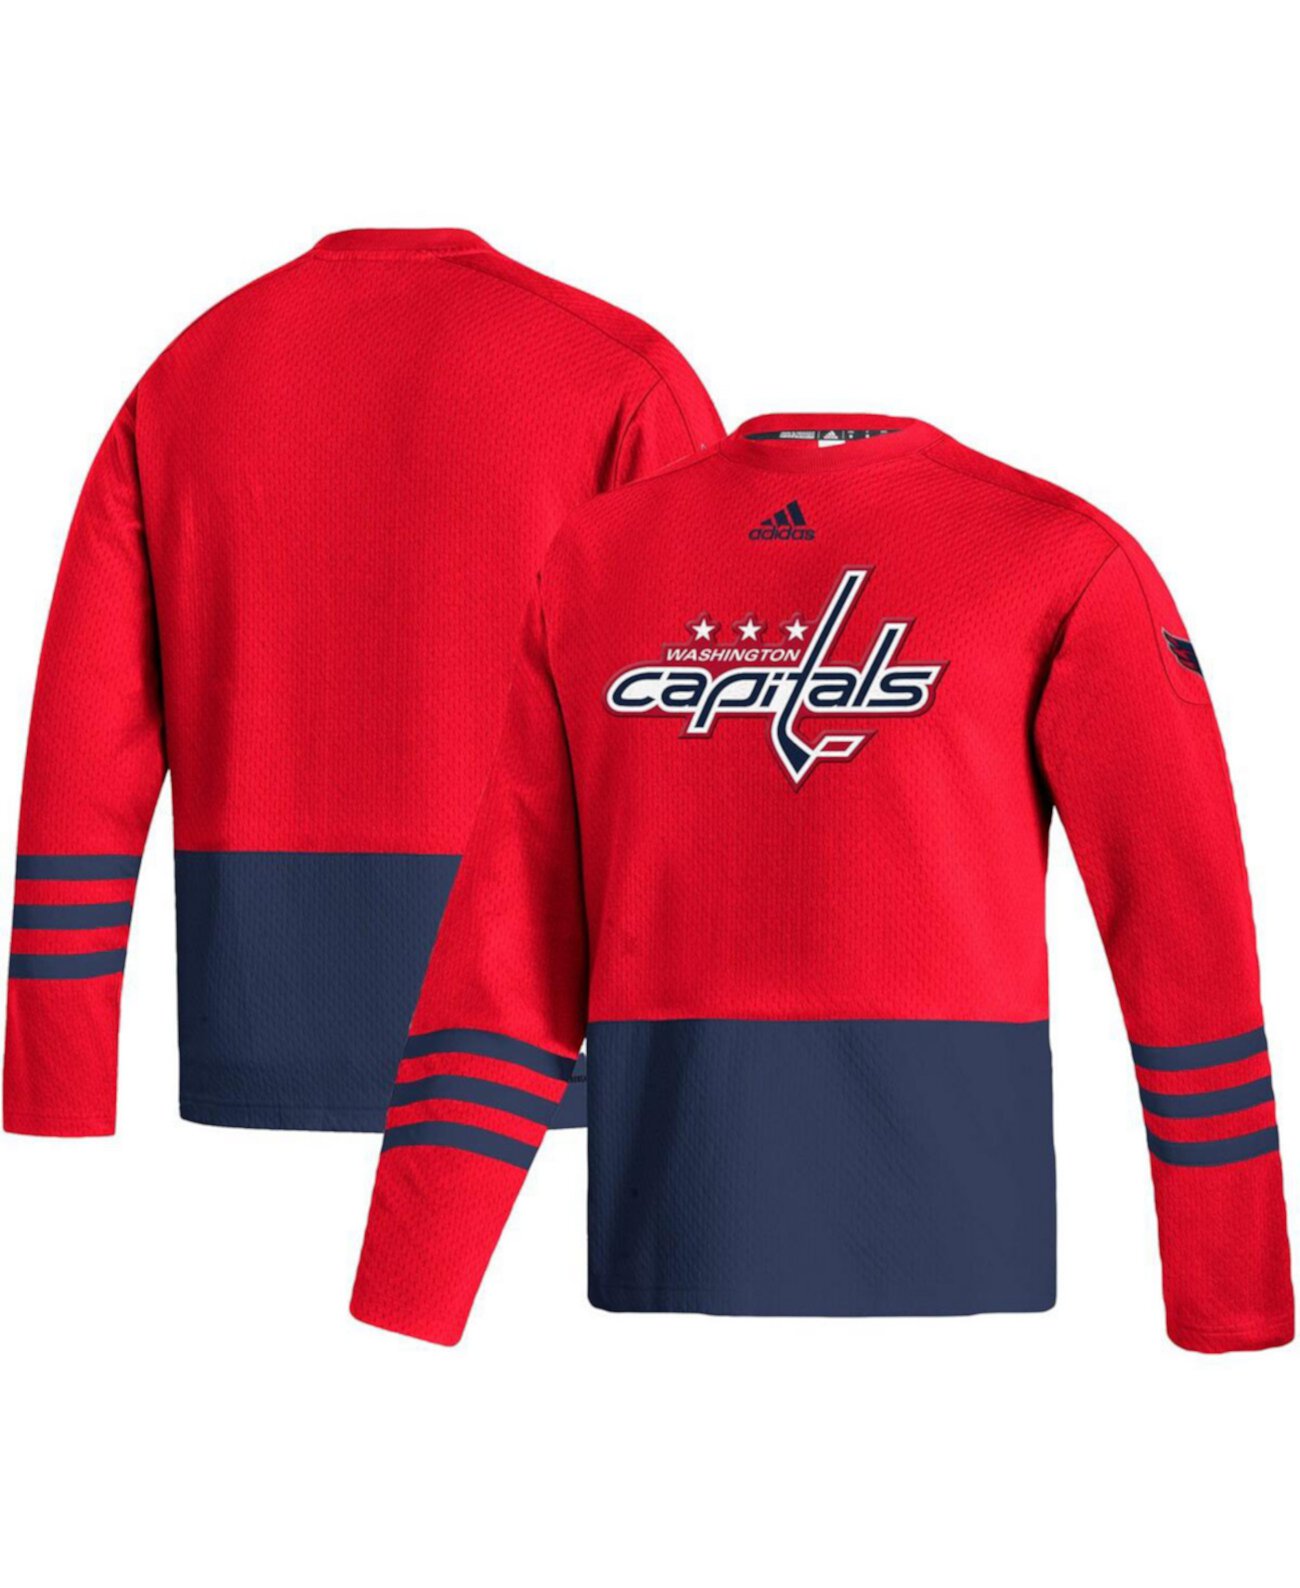 Мужской красный пуловер с логотипом Washington Capitals AEROREADY Adidas